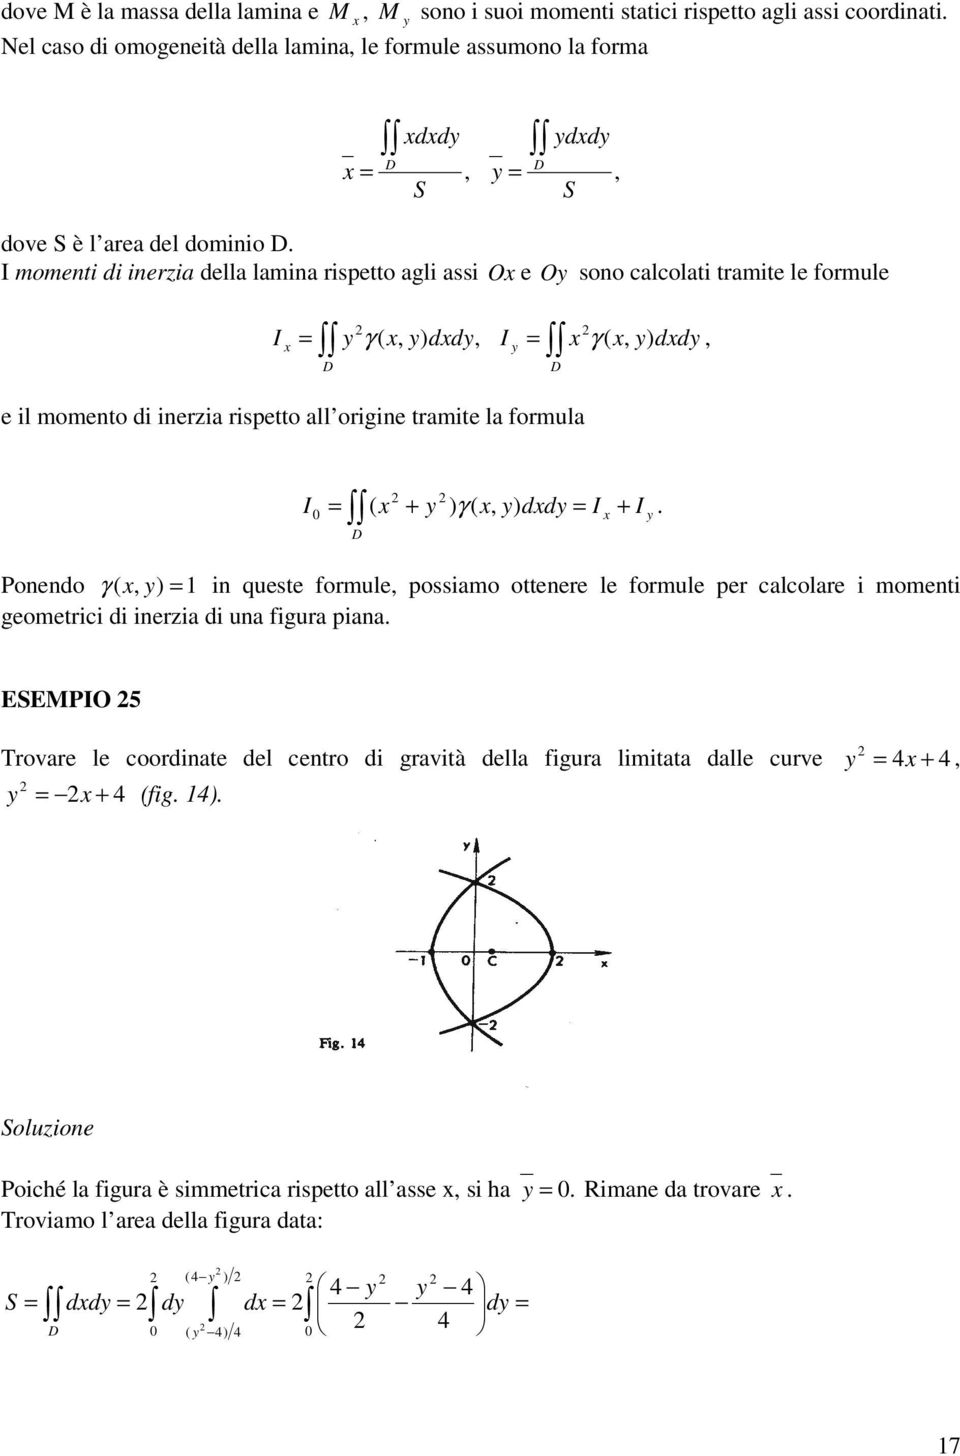 γ ( ( γ ( Poneno γ ( in quese formule possimo oenere le formule per clcolre i momeni geomerici i ineri i un figur pin ESEMPO rovre le coorine